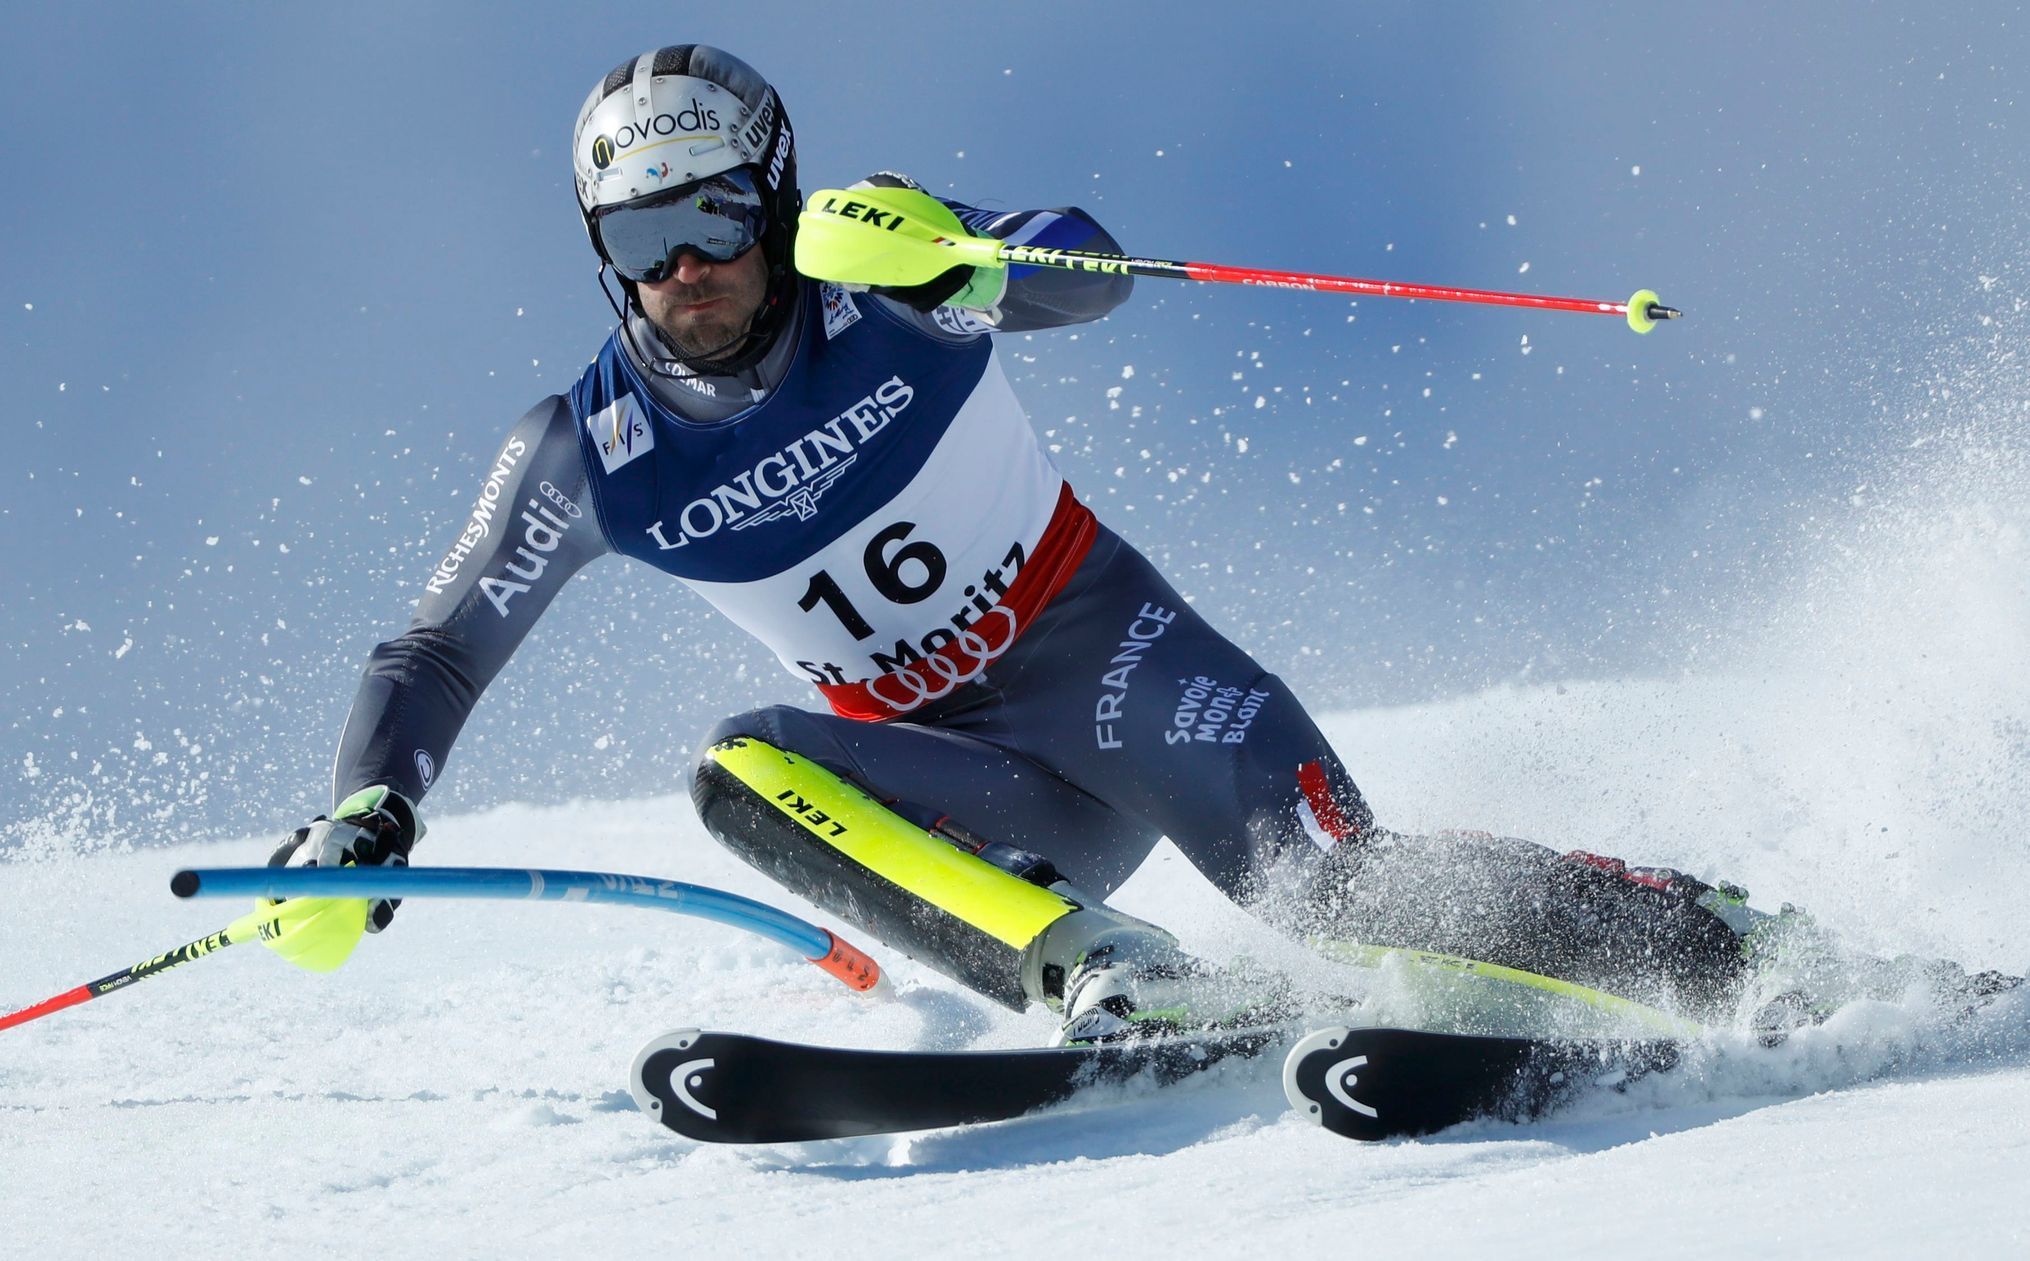 MS 2017 ve sjezdovém lyžování ve Svatém Mořici, kombinace mužů: Adrien Théaux